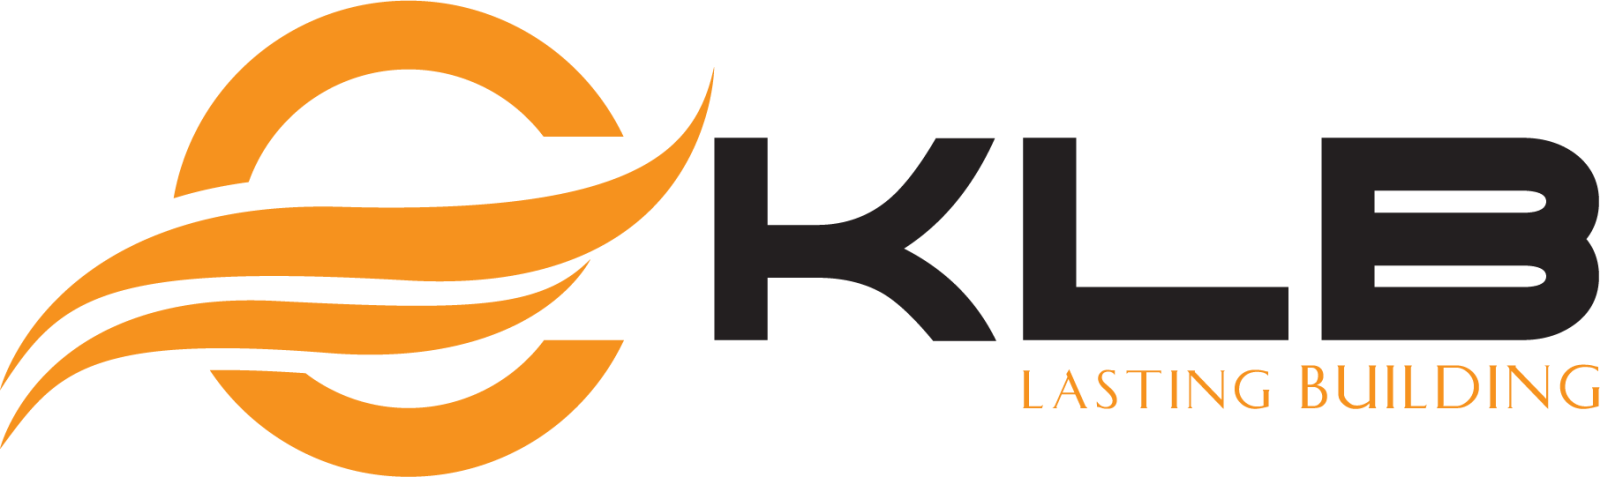 Logo Công ty Cổ phần KLB